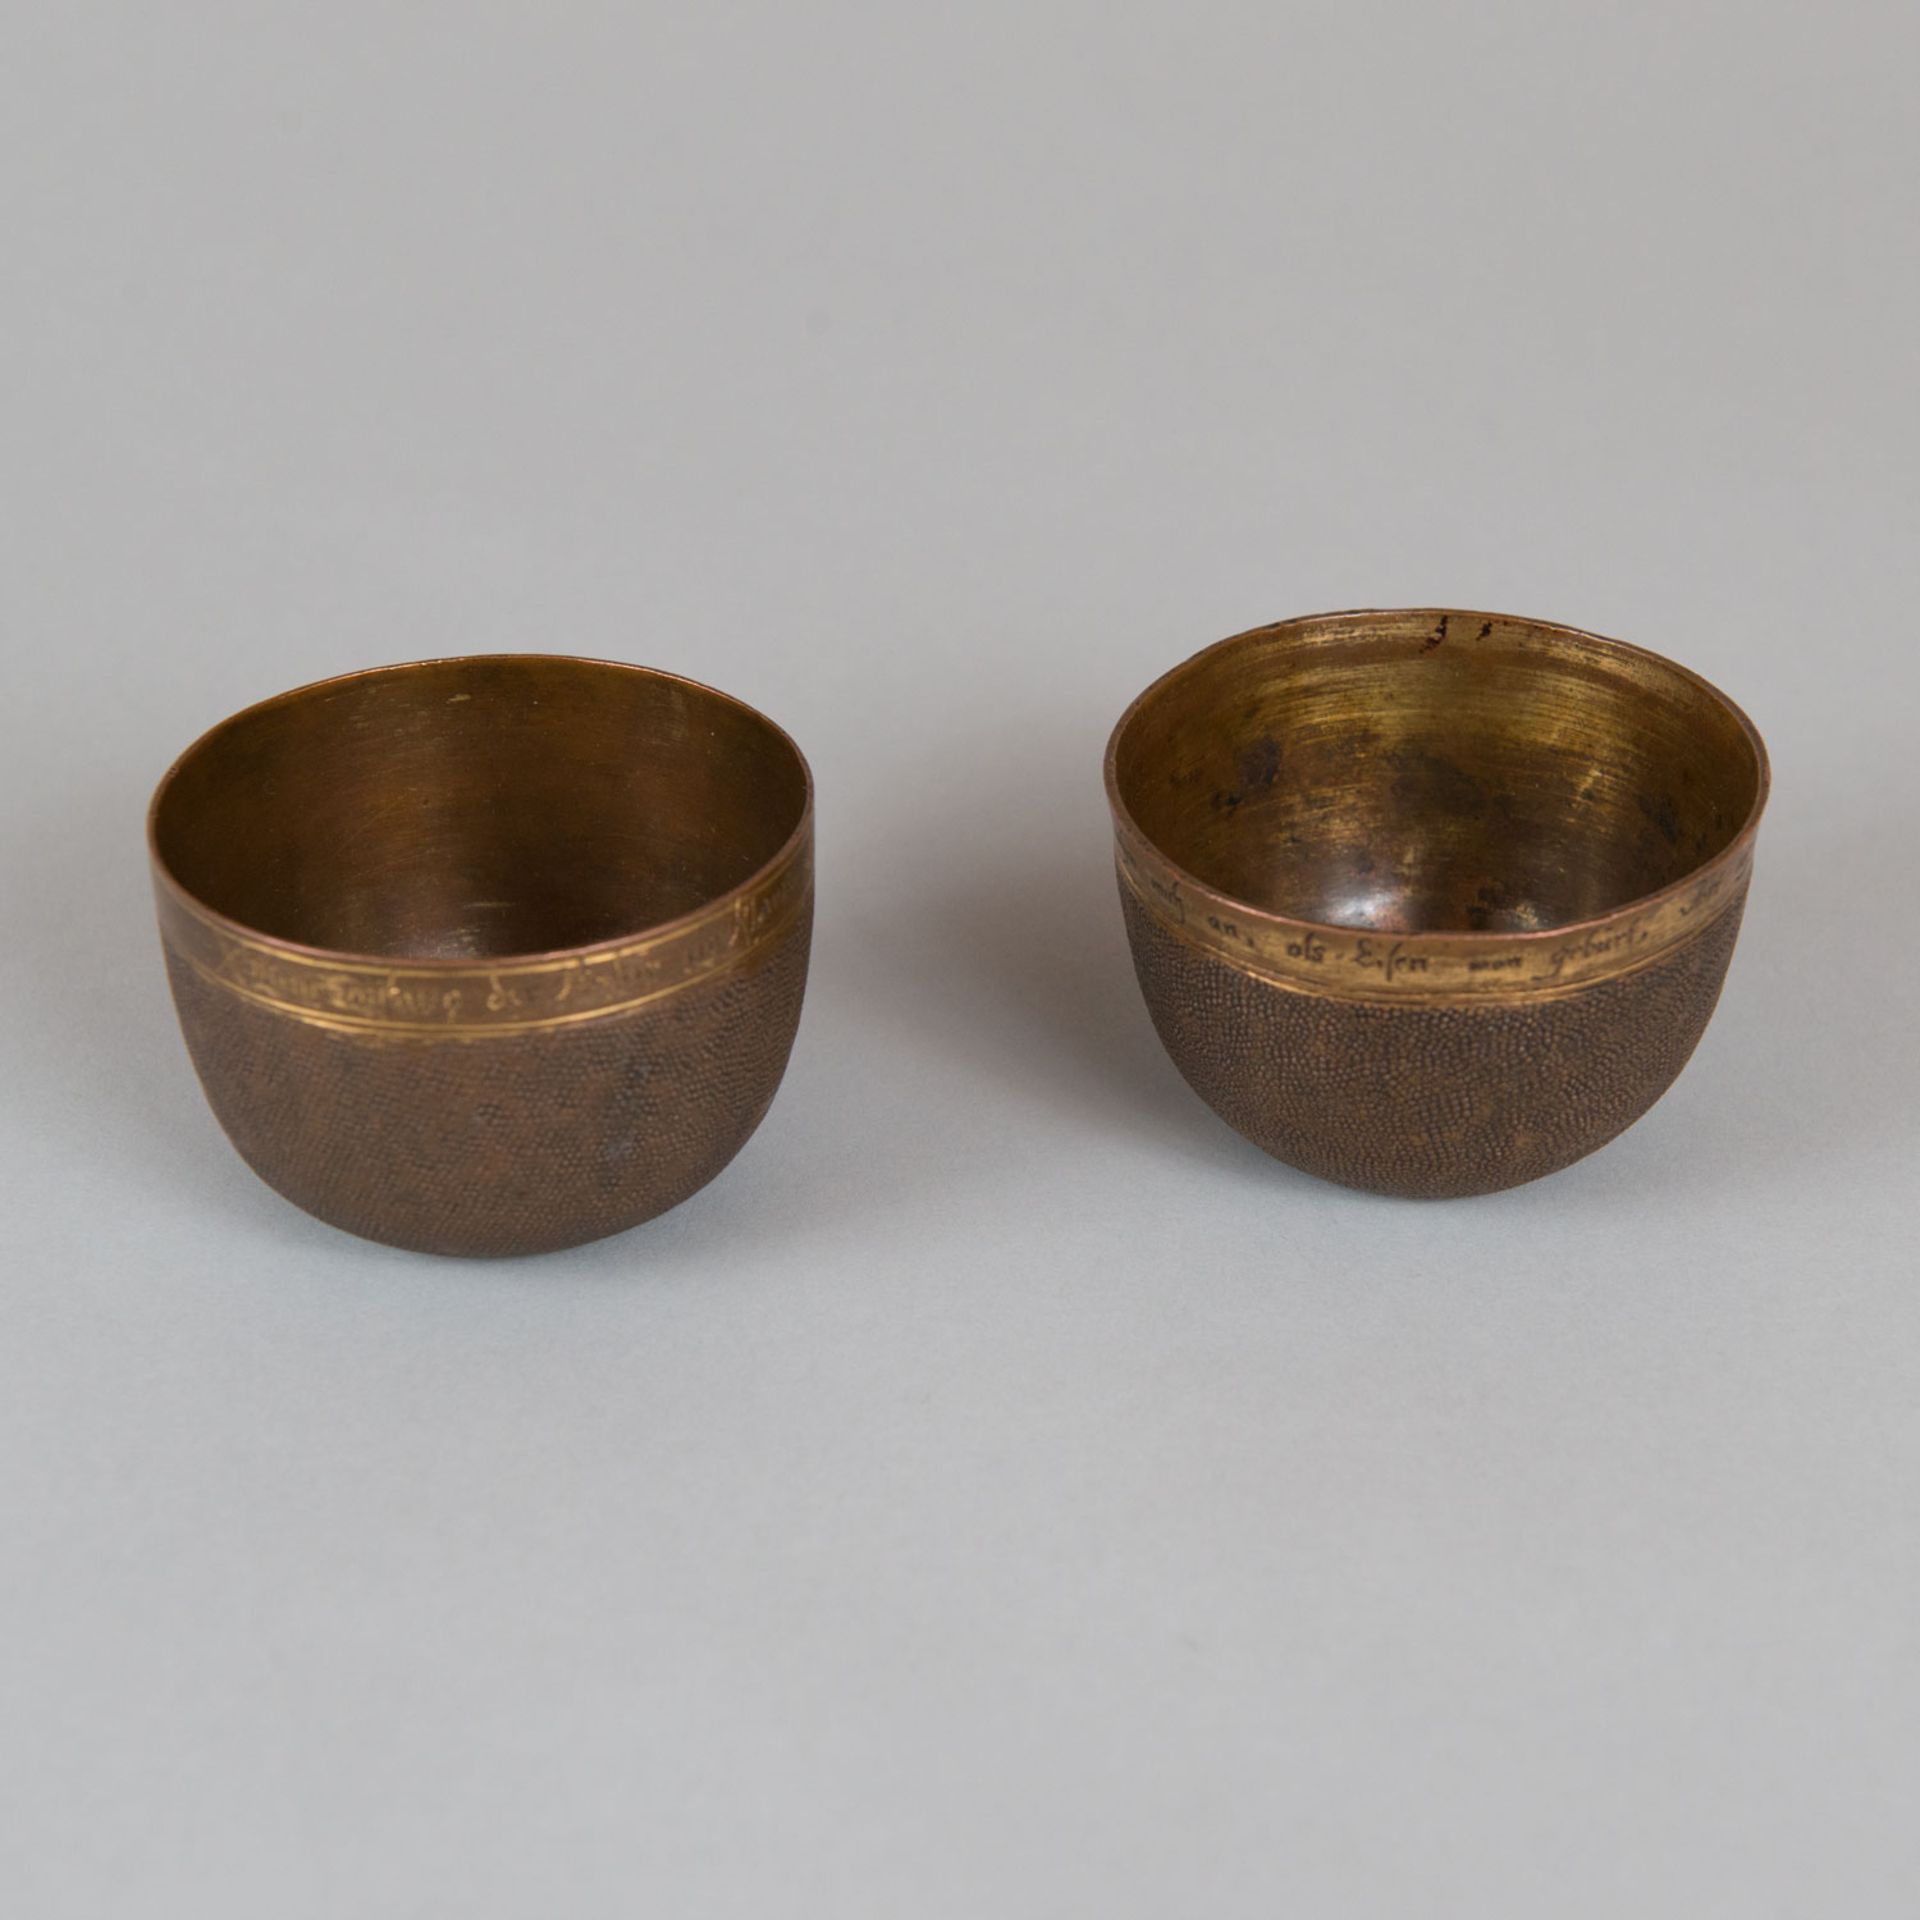 Two Herrengrund bowls